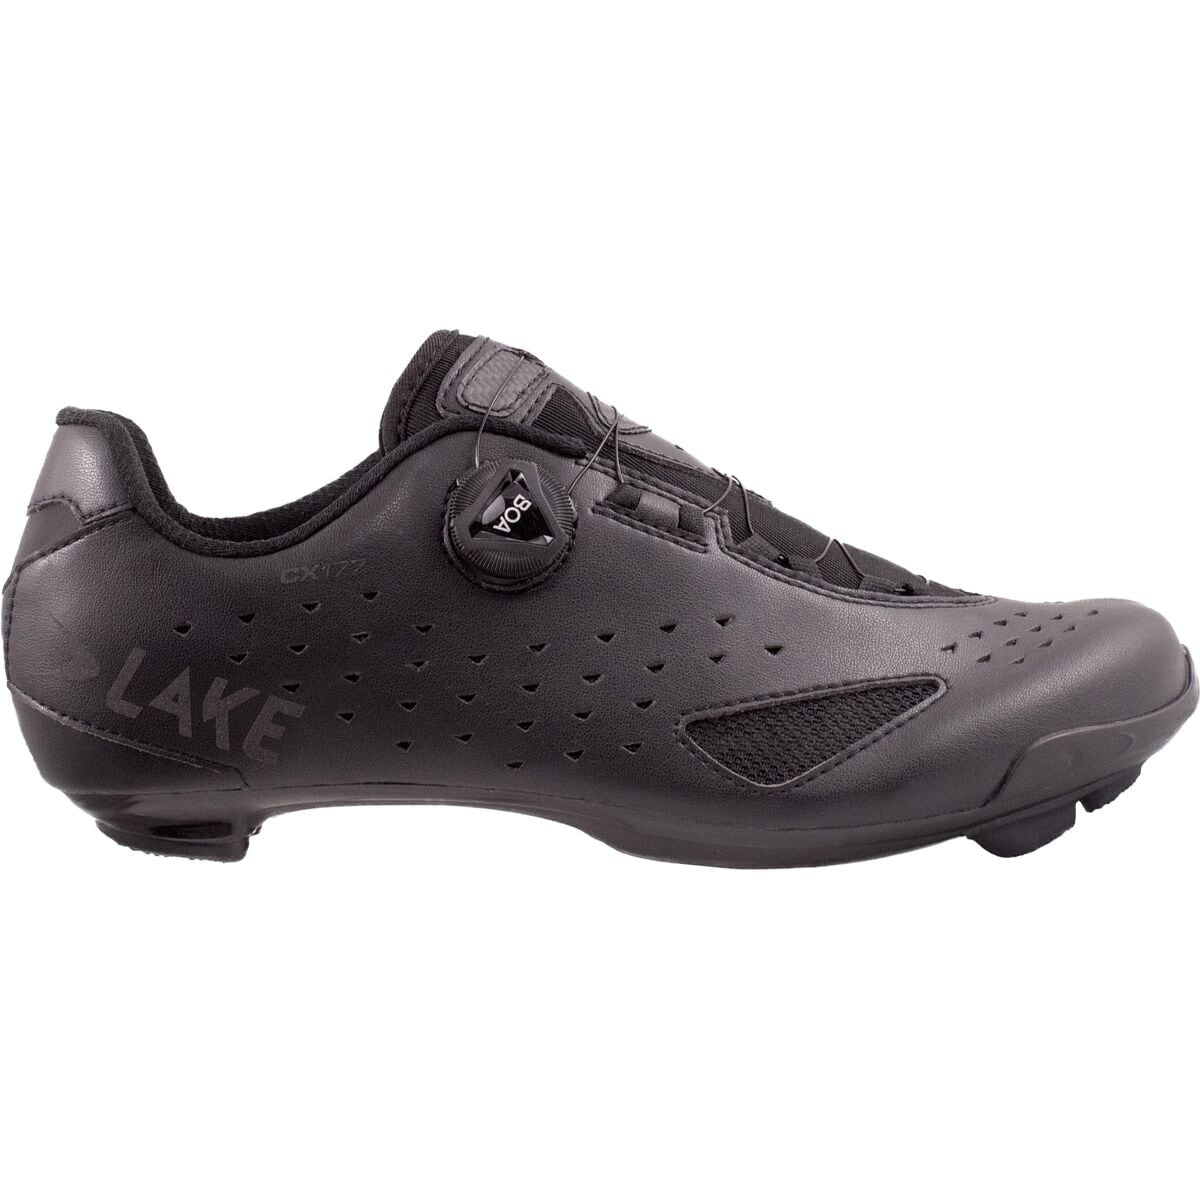 Lake CX177 Cycling Shoe - Men's Black/Black Reflective, 43.0